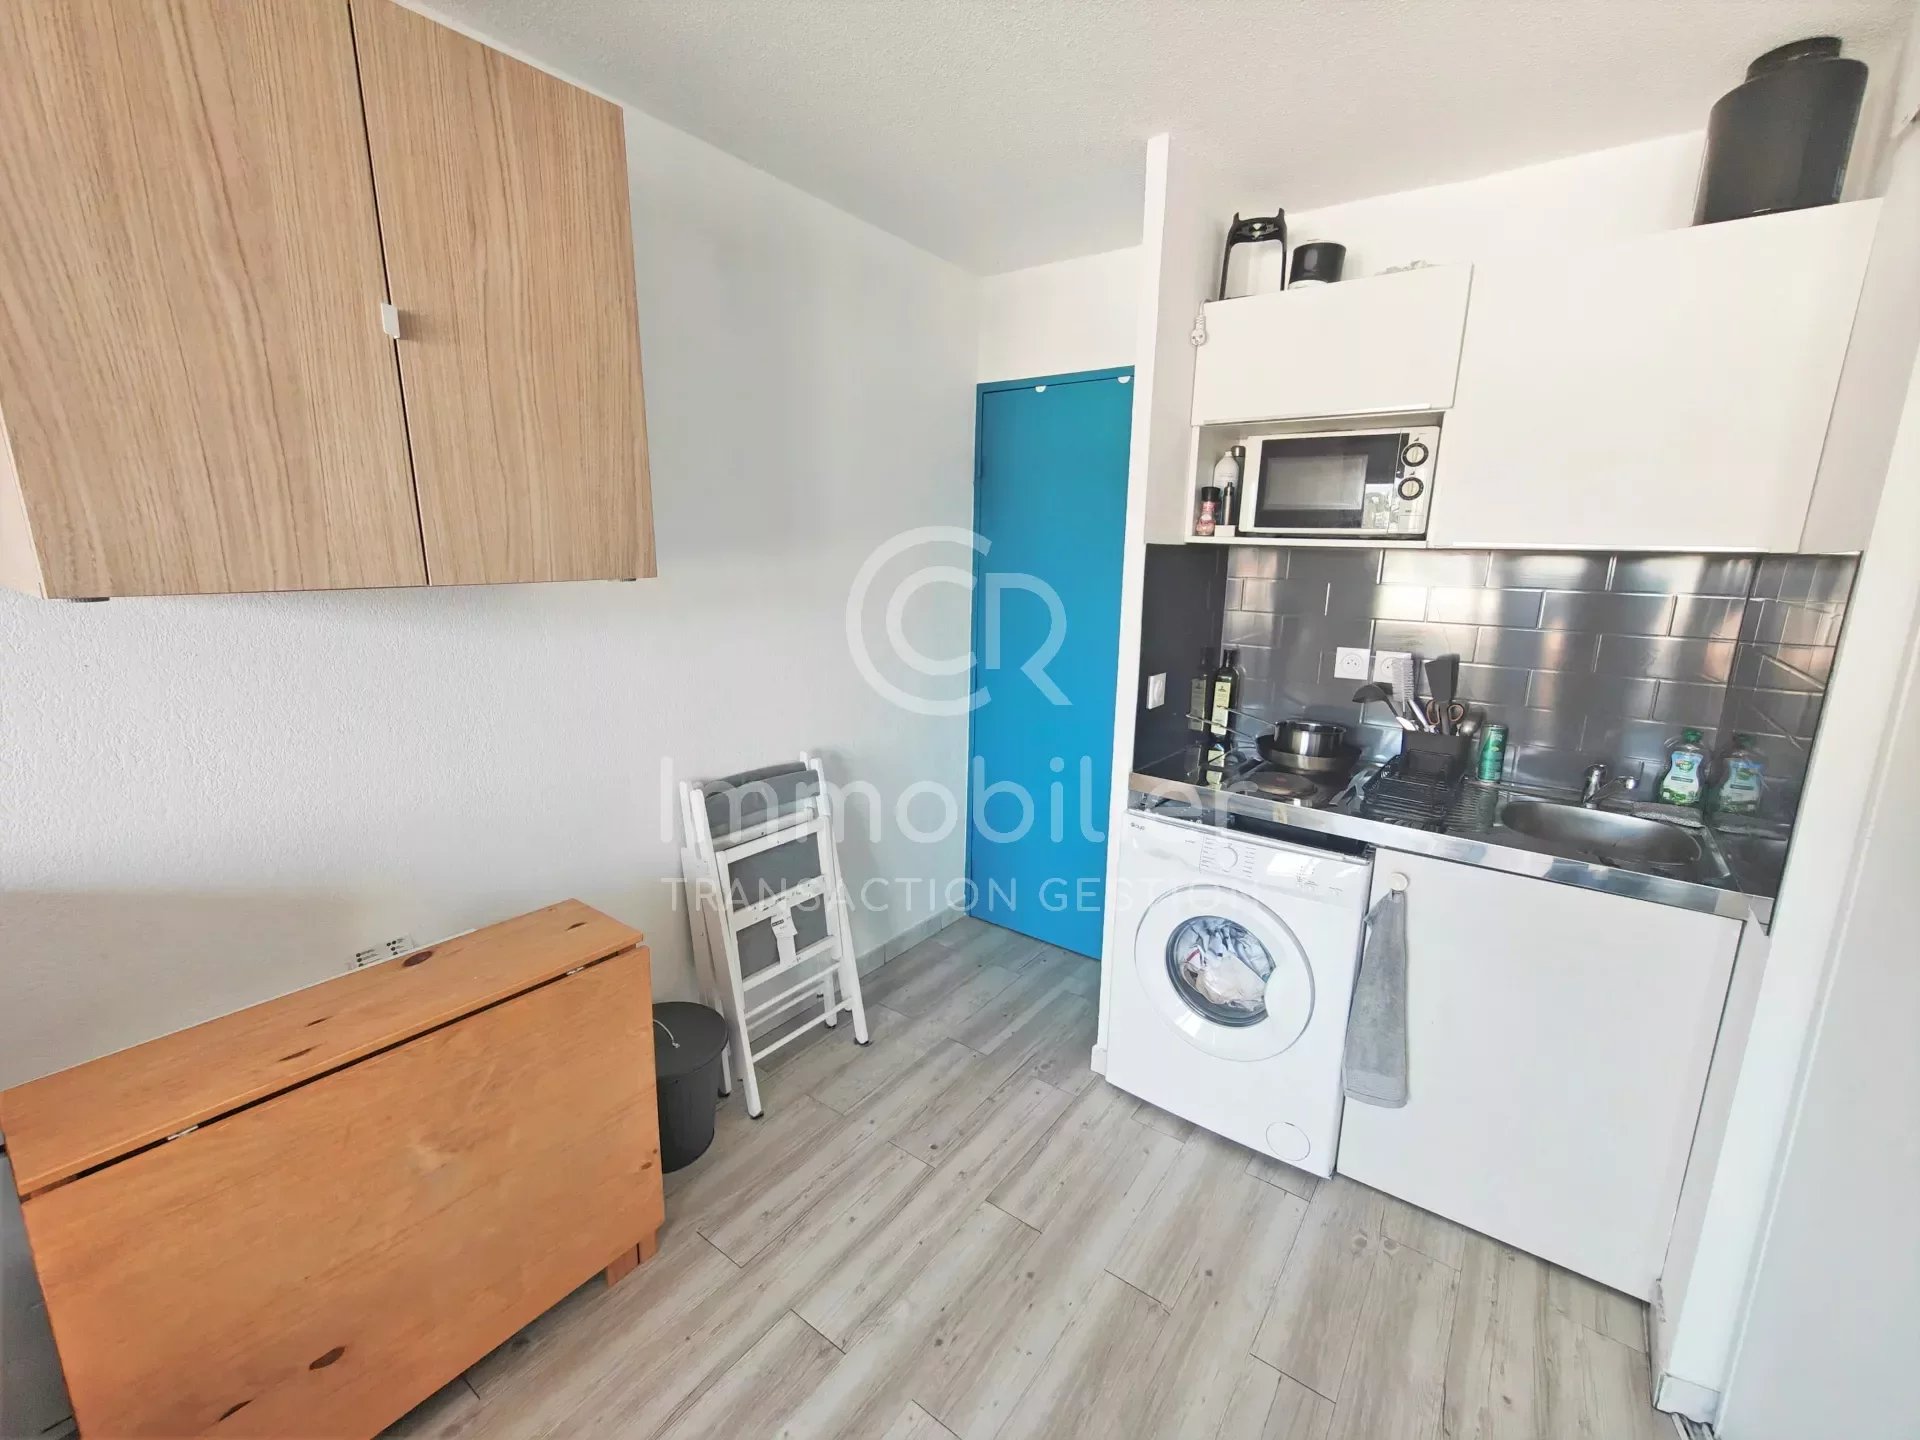 Vente Appartement 20m² à Cannes la Bocca (06150) - Ccr Immobilier